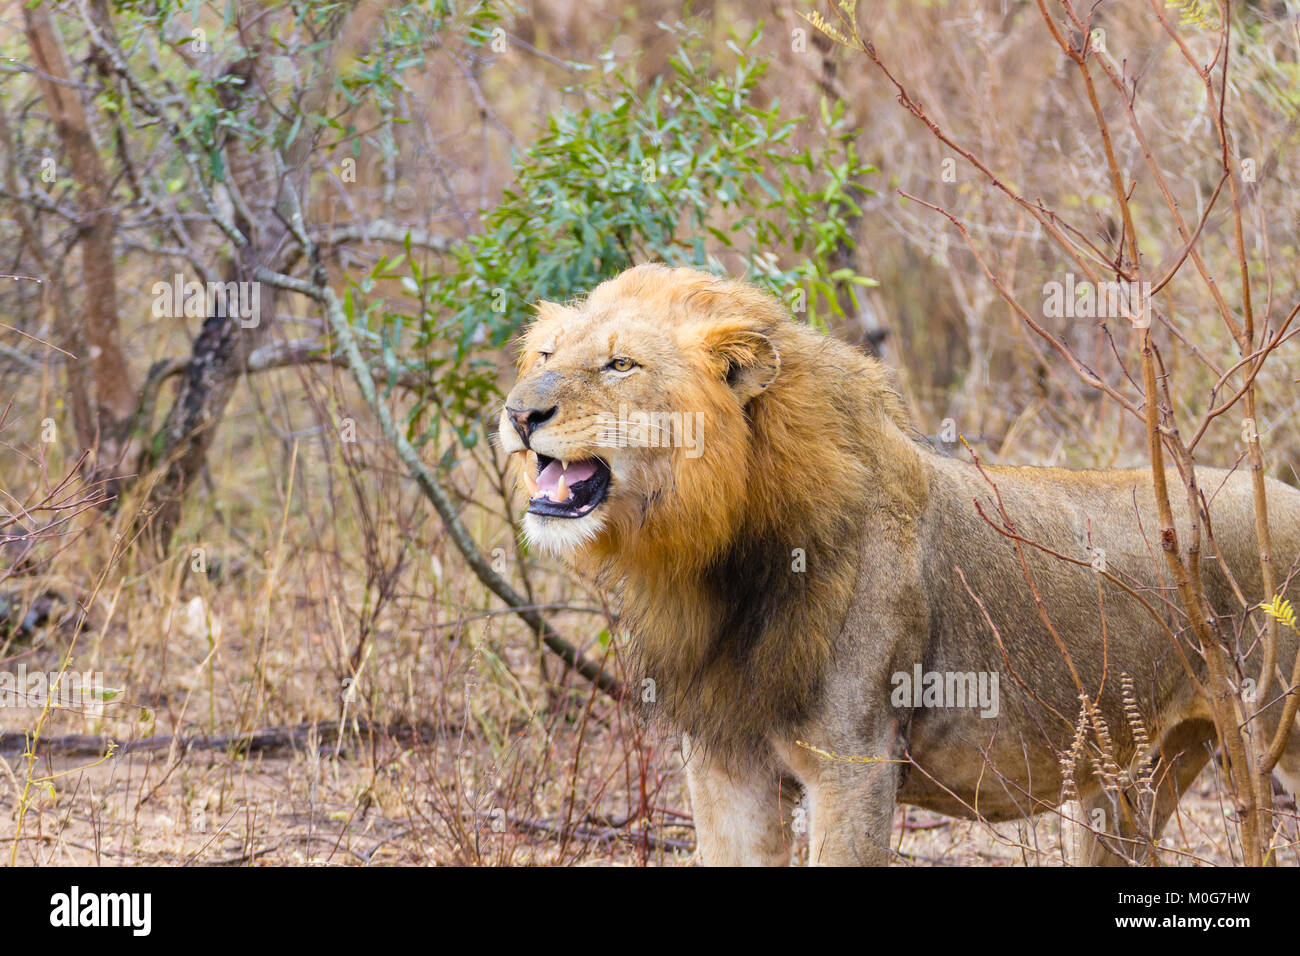 Löwe von Krüger Nationalpark, Südafrika. Afrikanische Tierwelt. Tiere in der Natur. Stockfoto